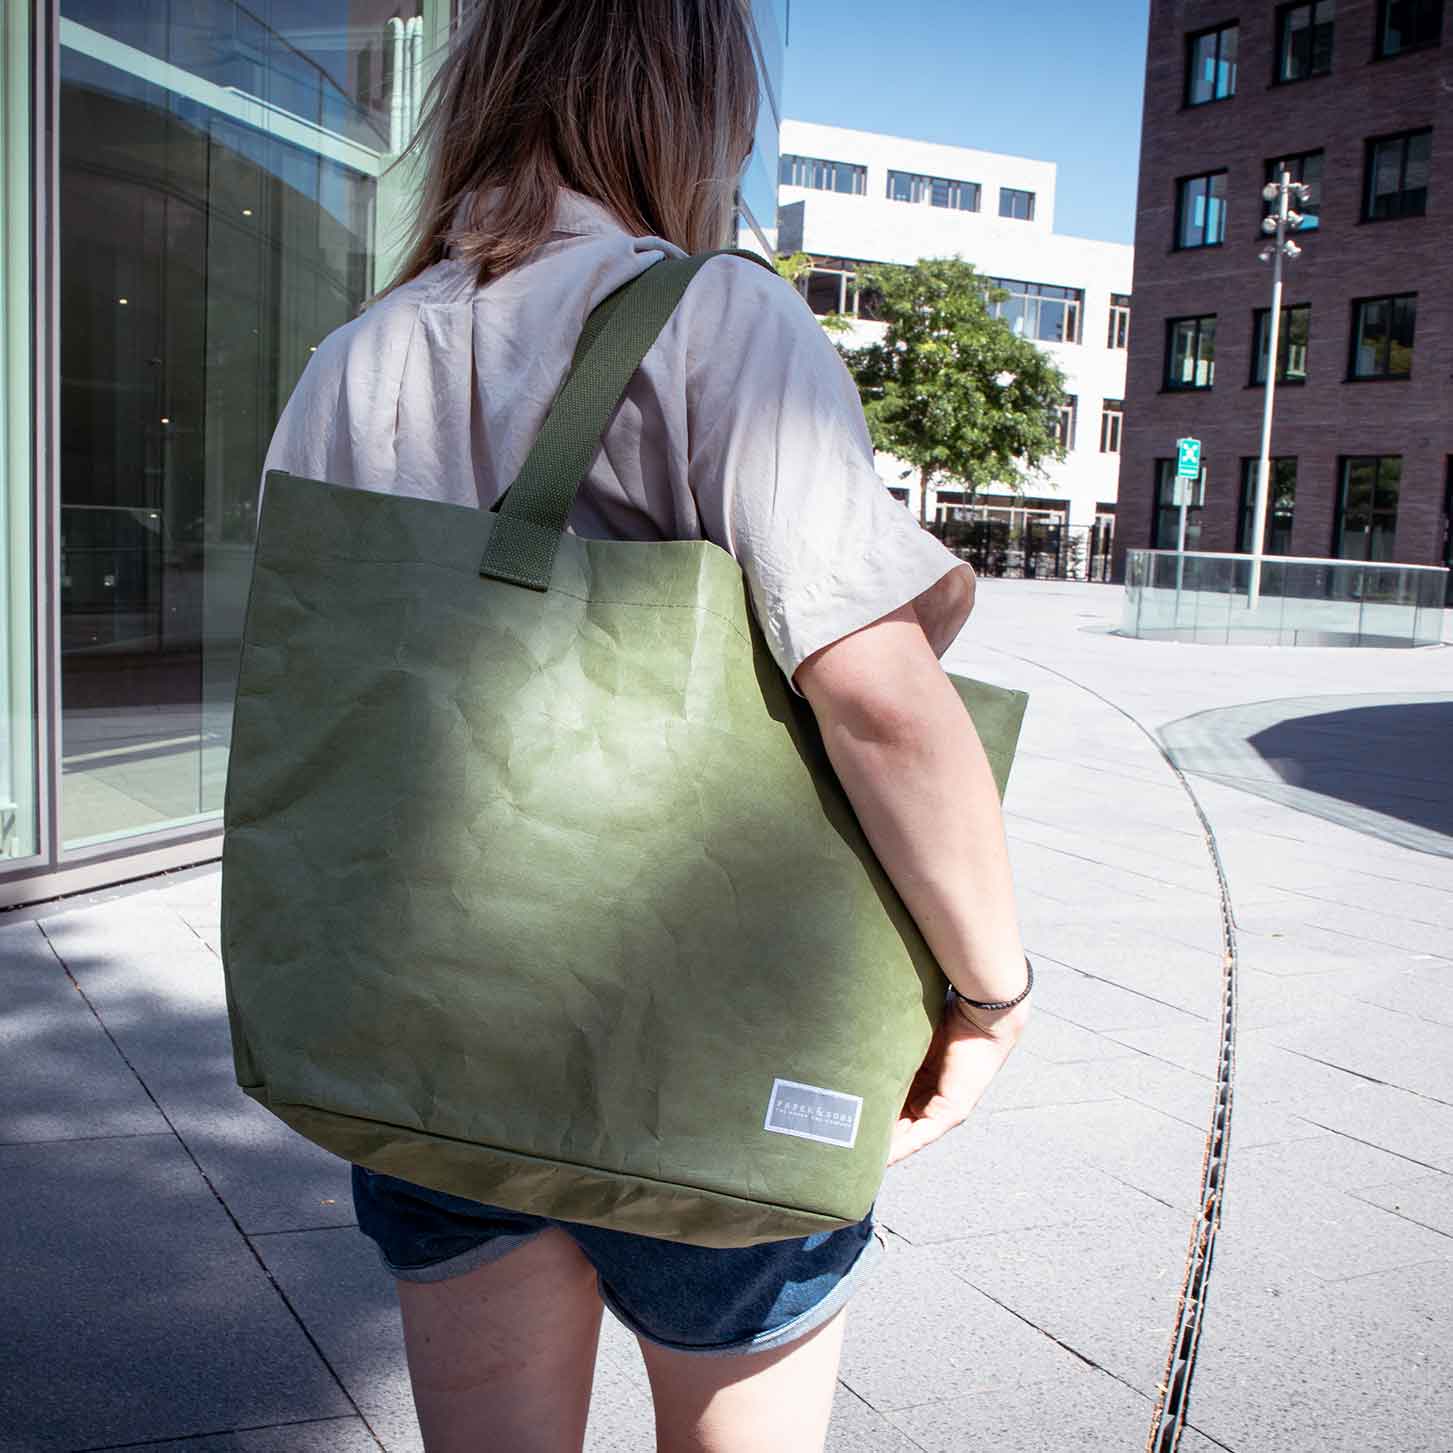 Shopper Tasche, Tote Bag, nachhaltige Einkaufstasche, veganer